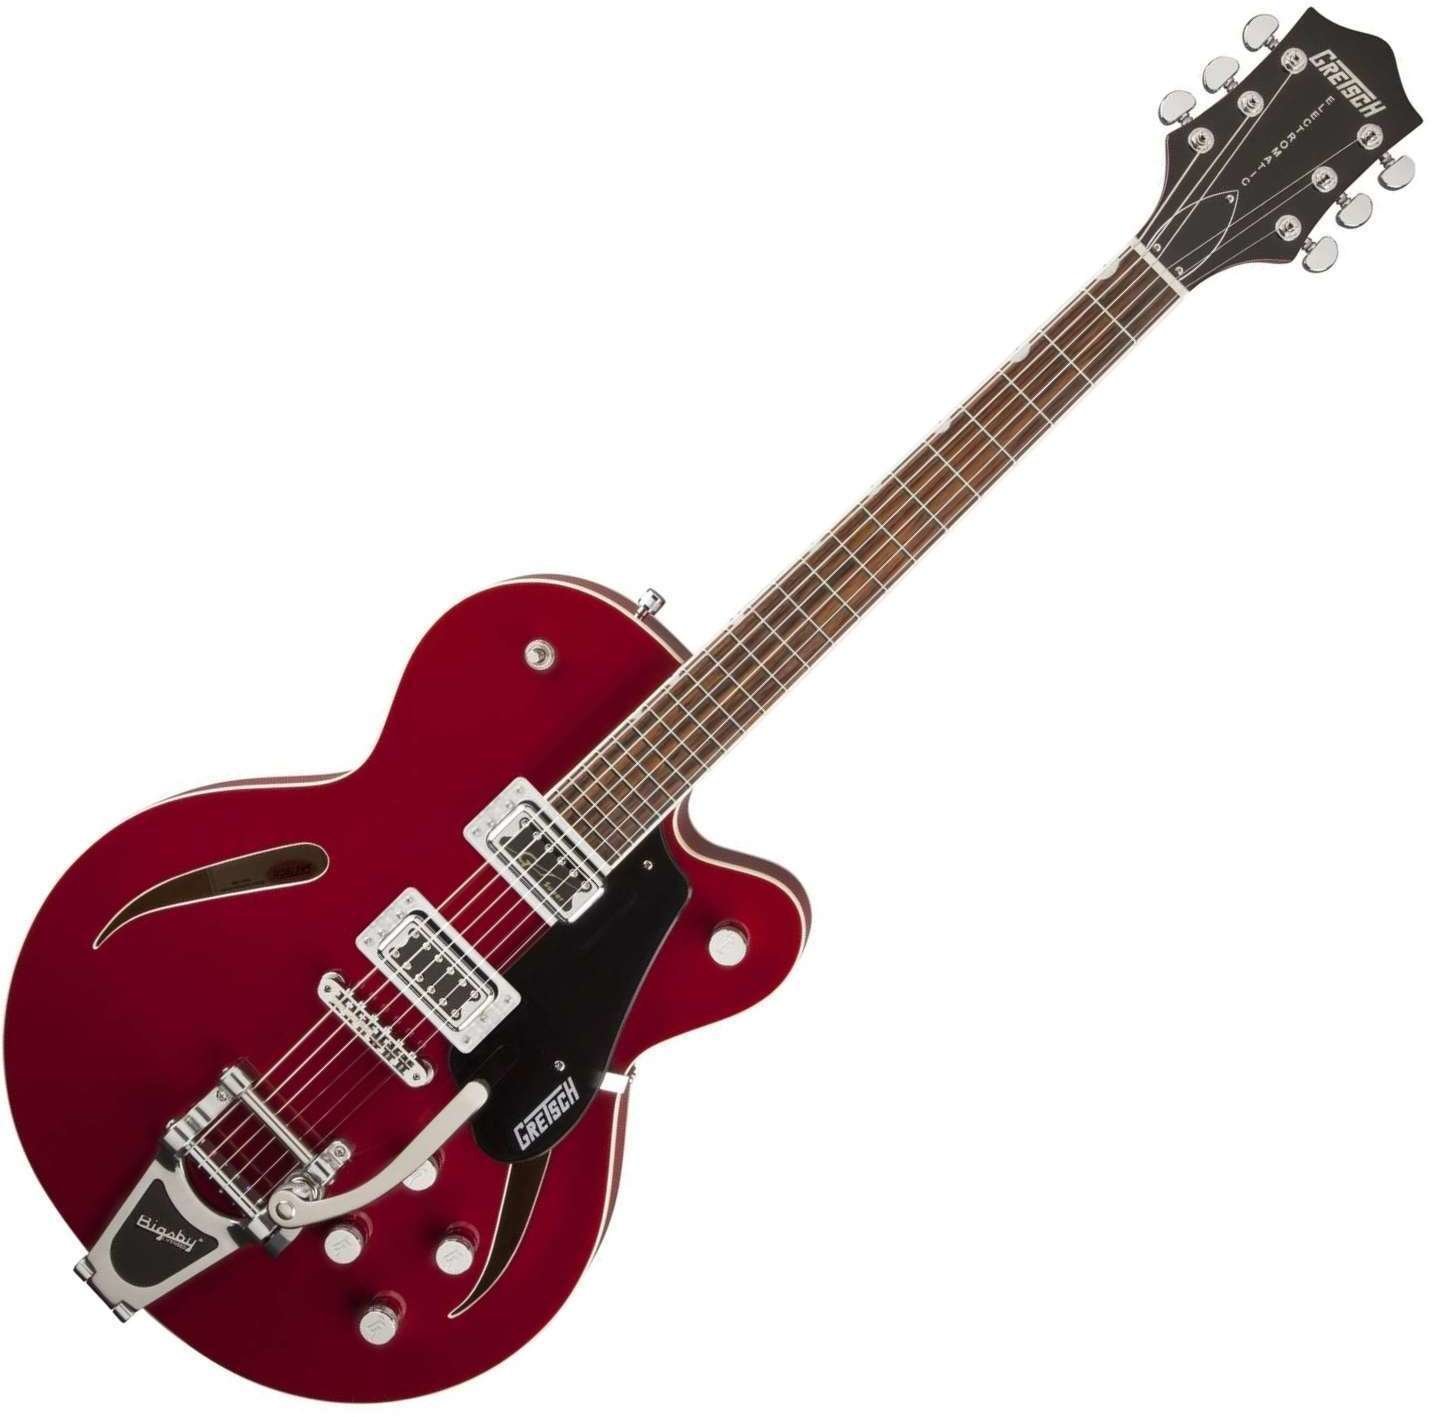 Halvakustisk gitarr Gretsch G5620T-CB Rosa Red